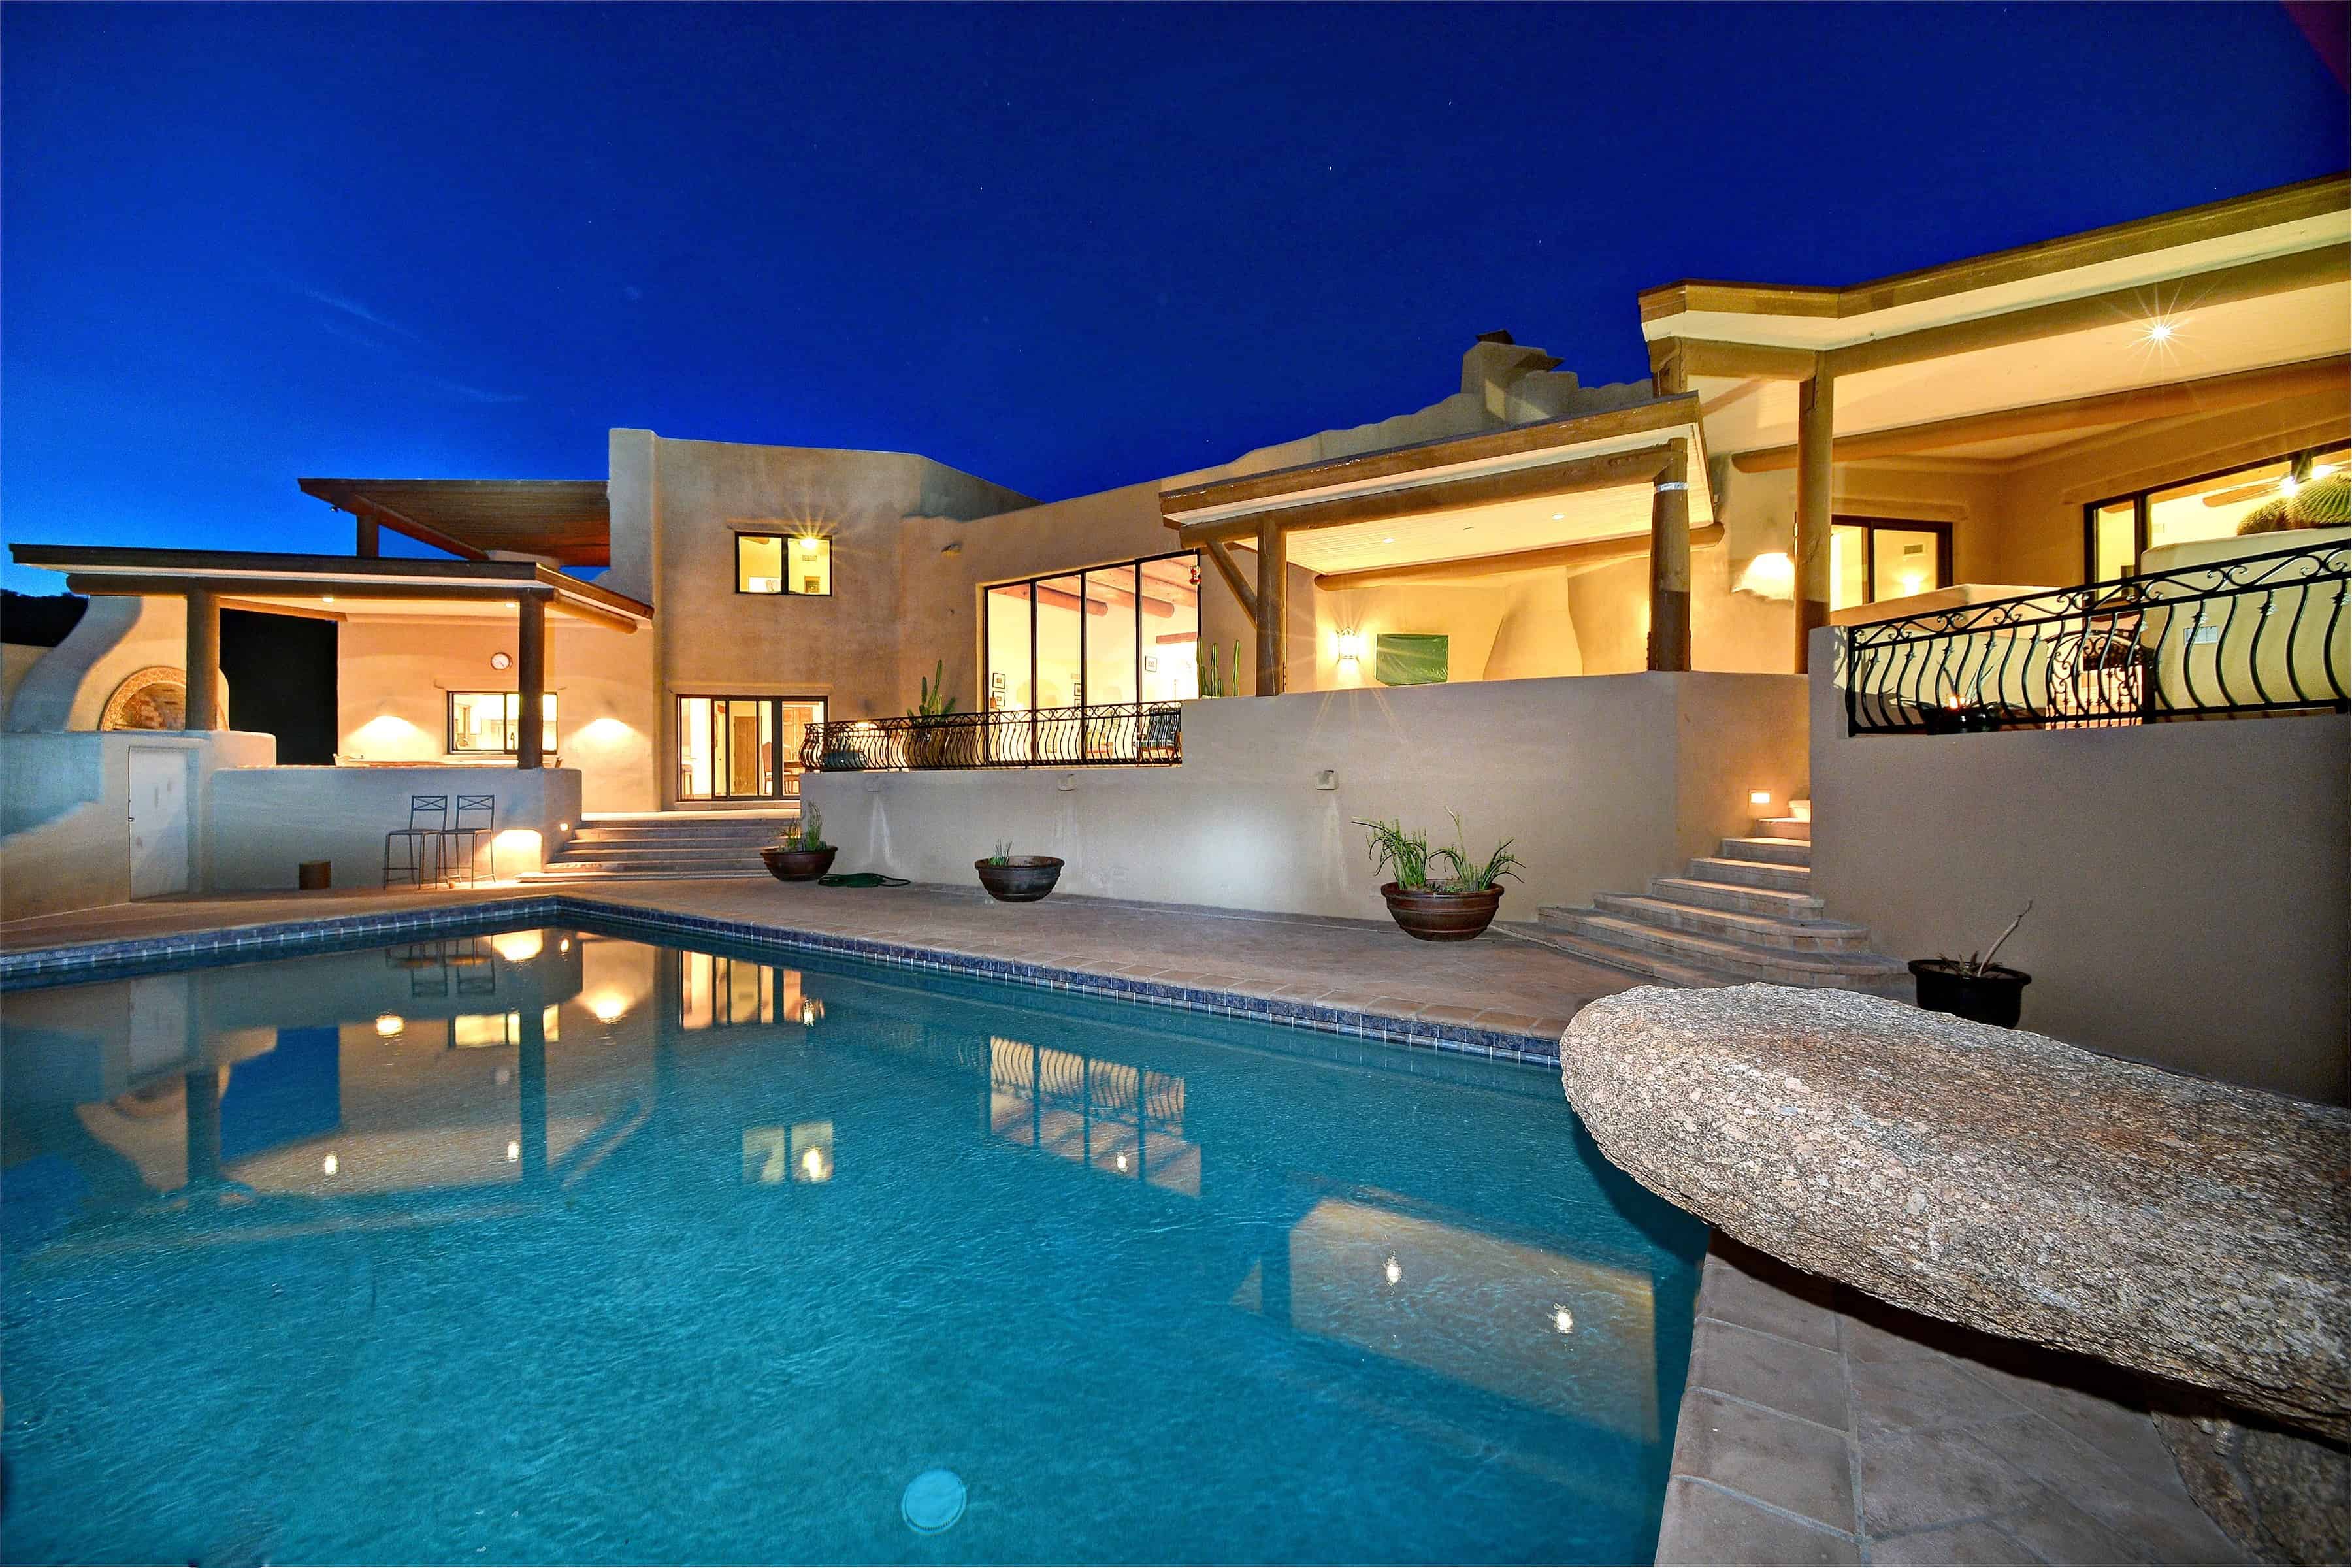 Scottsdale AZ Luxury Home Market – July 2014
